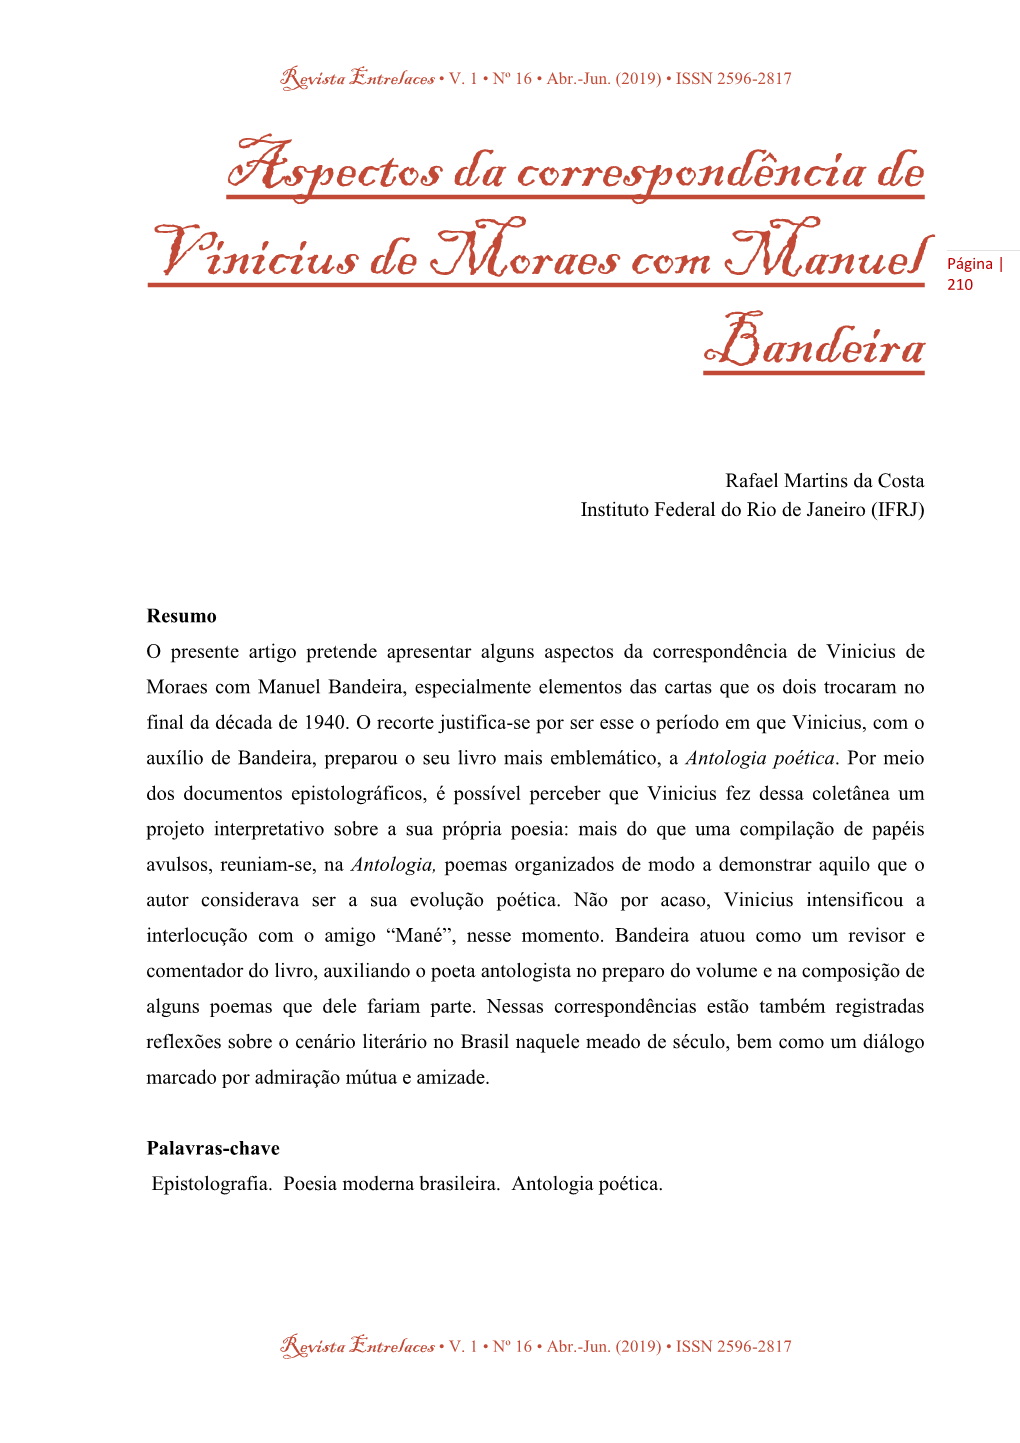 Aspectos Da Correspondência De Vinicius De Moraes Com Manuel Bandeira, Especialmente Elementos Das Cartas Que Os Dois Trocaram No Final Da Década De 1940